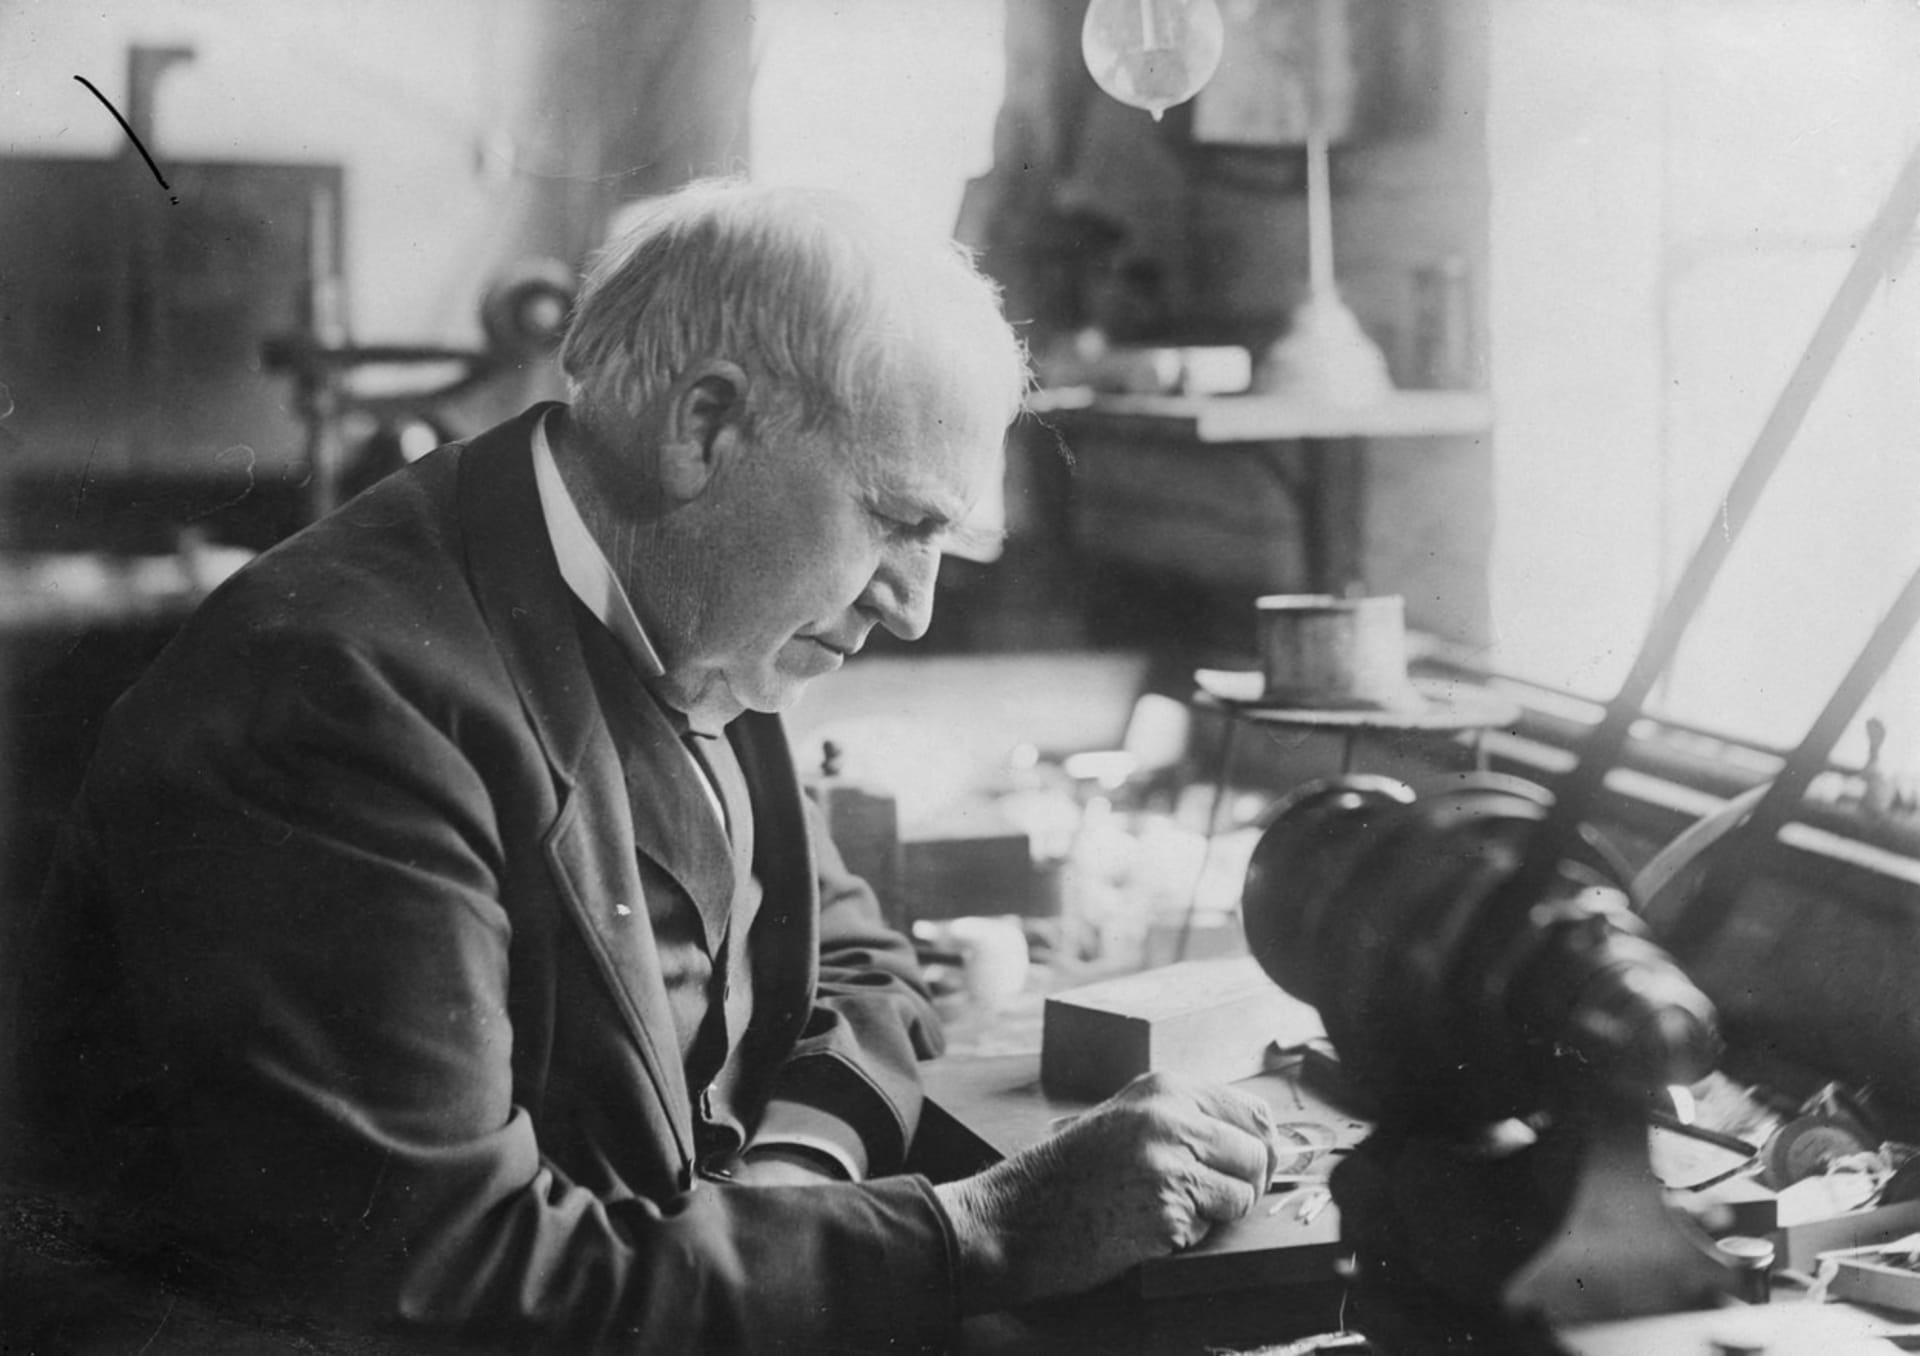 Vynálezce a podnikatel, jehož jméno slyšel každý. Thomas Alva Edison zemřel před 90 lety. Jako kluk si přitom zvládl postavit chemickou laboratoř ve vlaku a později vyrábět mluvící panenky. 